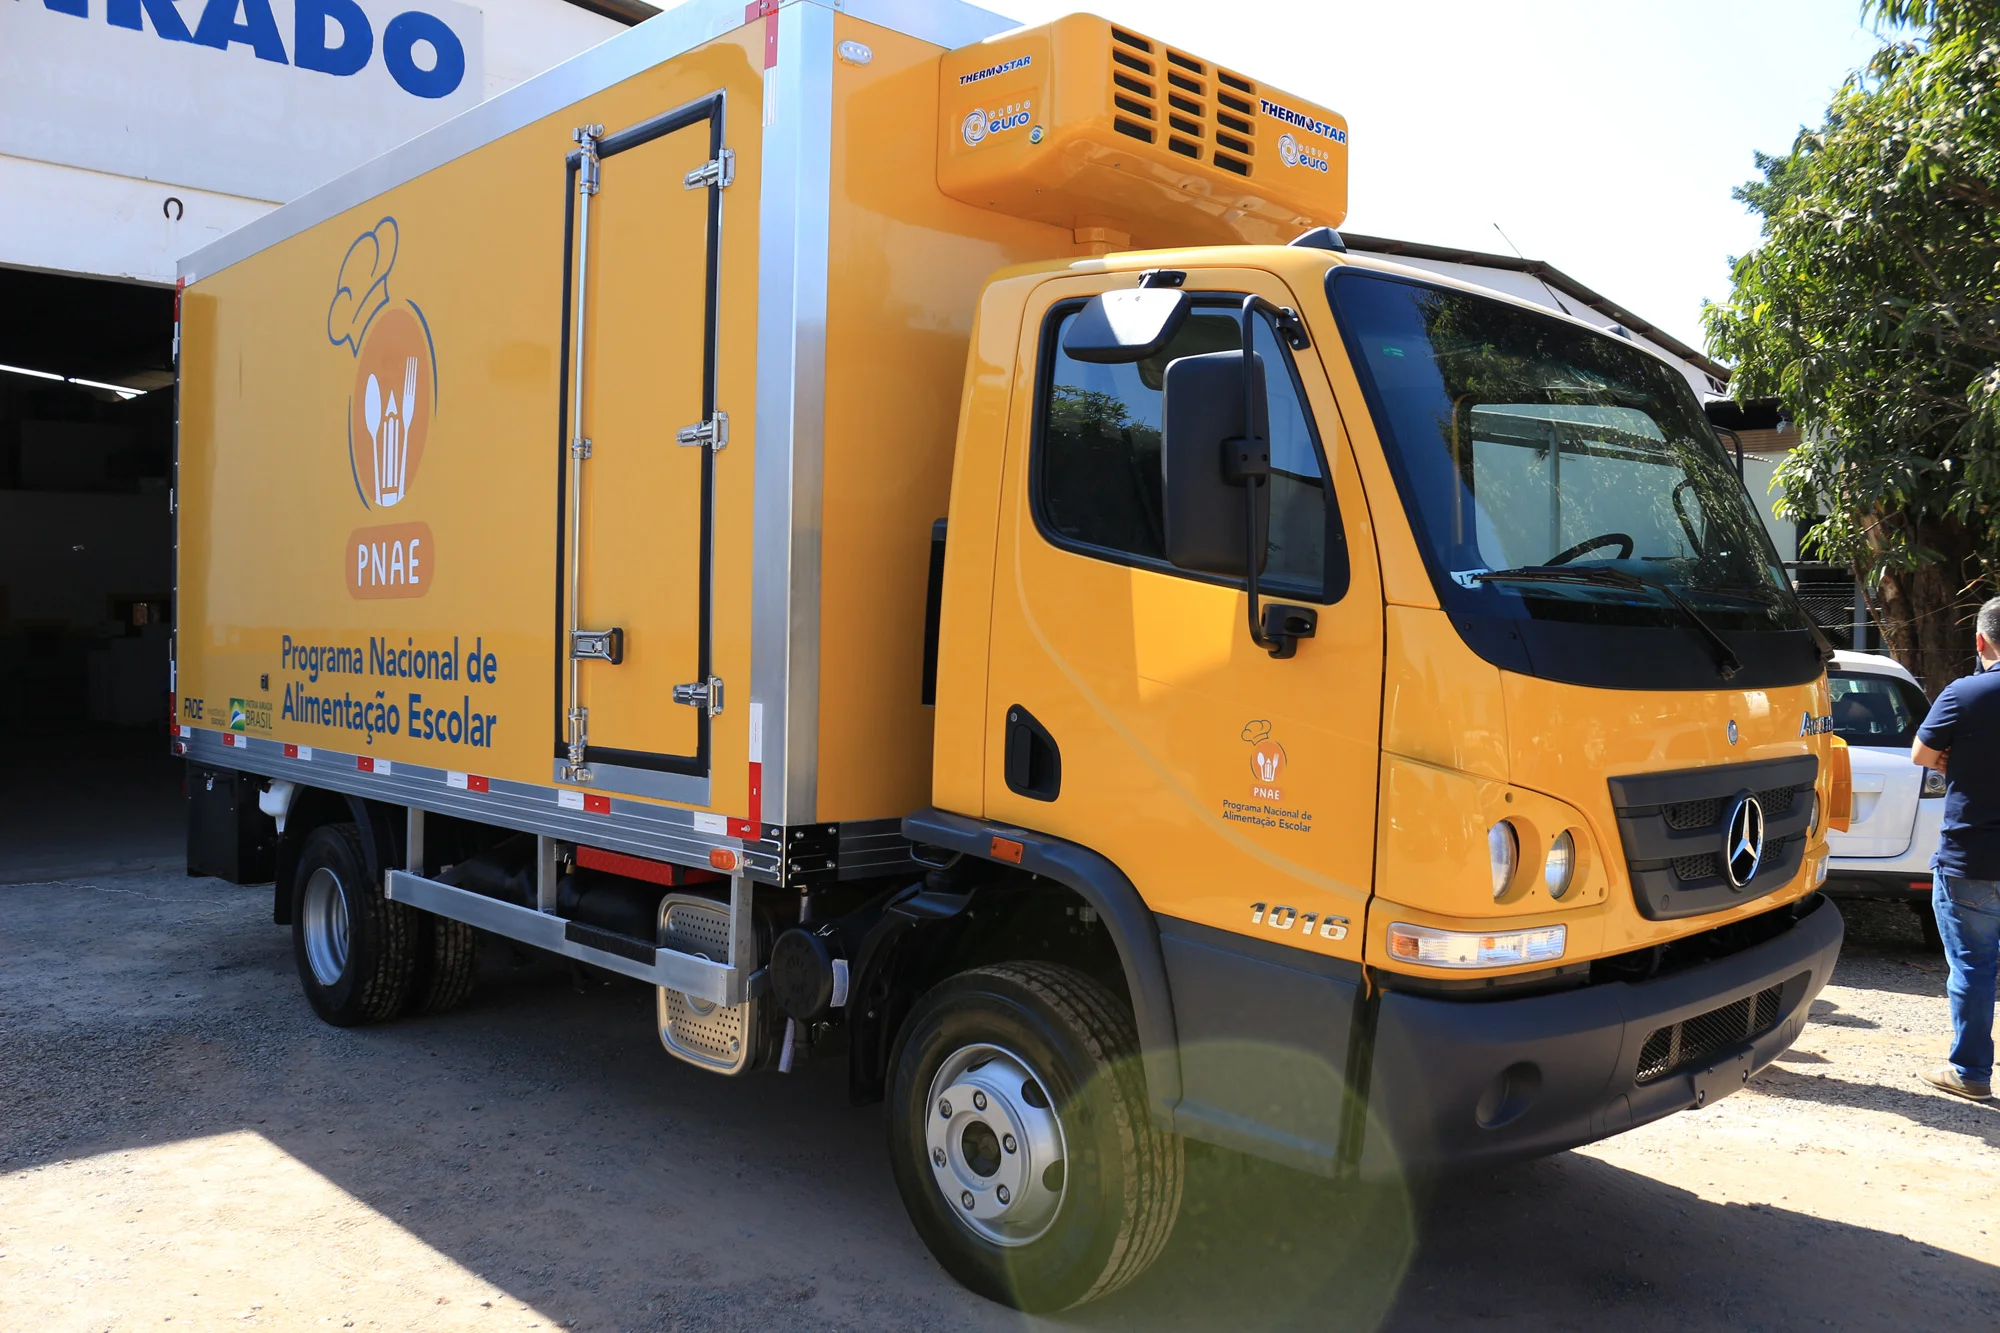 Prefeitura de Guanambi vai adquirir caminhão frigorífico para atender unidades escolares